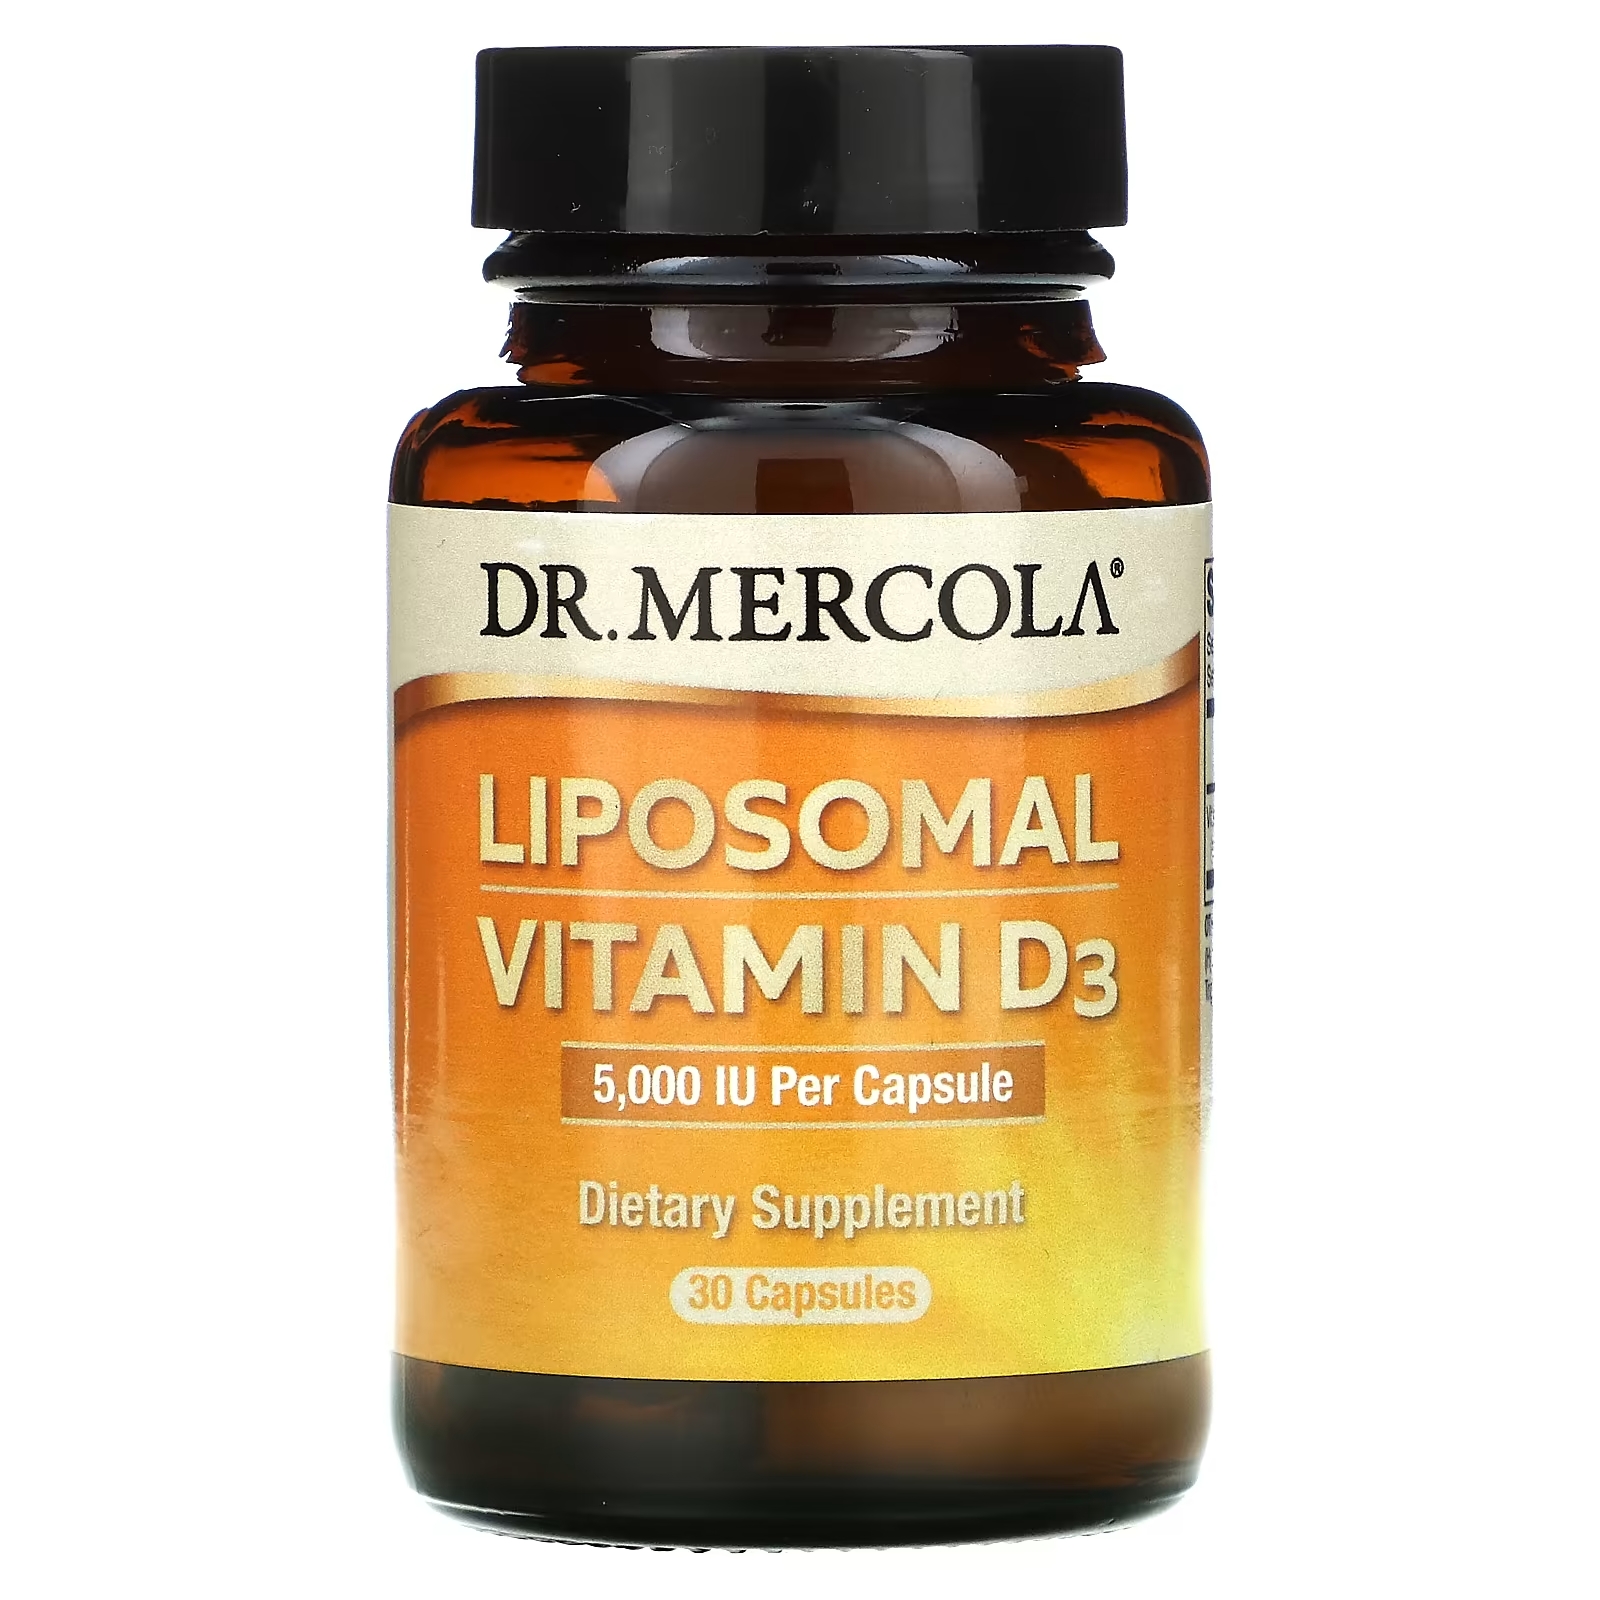 Dr. Mercola липосомальный витамин D3 5000 МЕ, 30 капсул